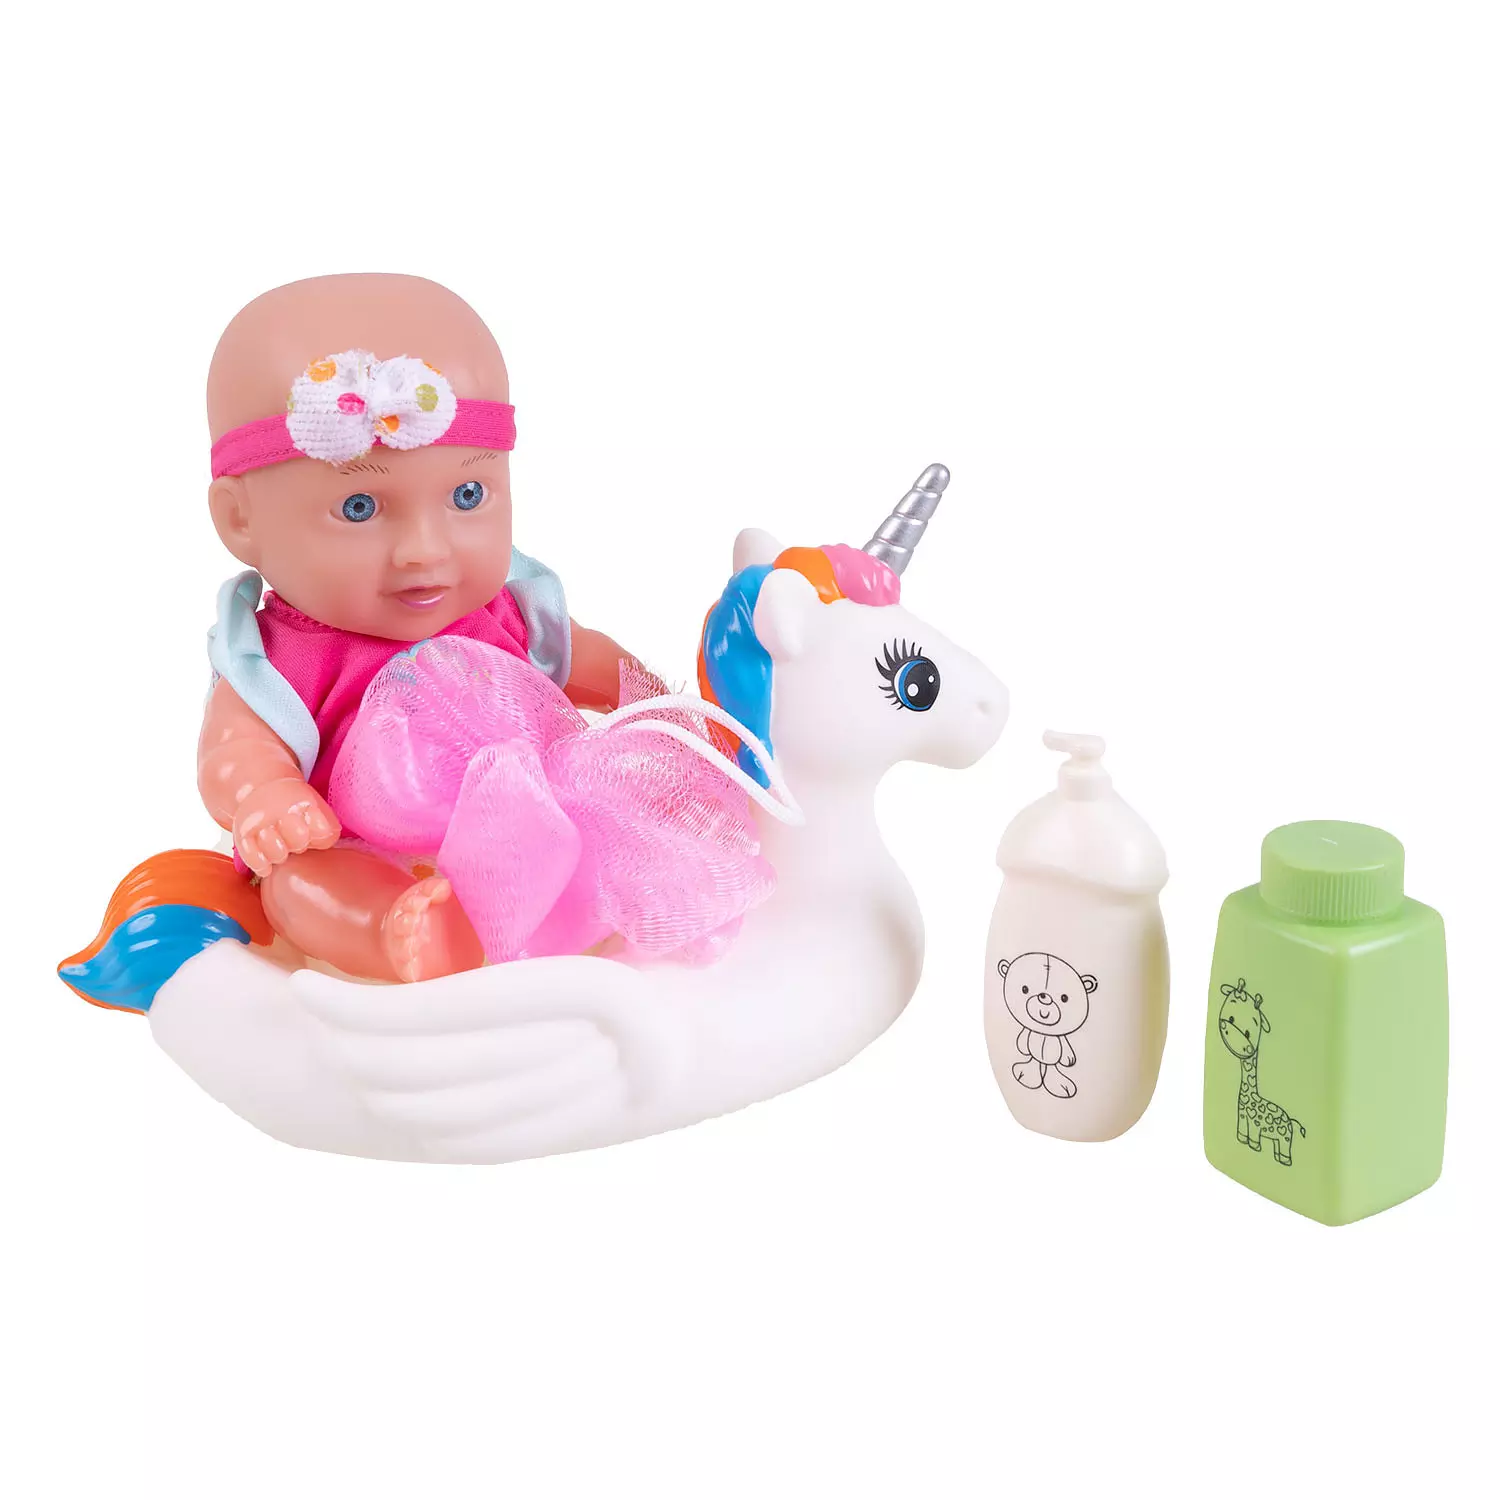 L'heure du bain poupée bébé avec accessoires. Colour: multi-color